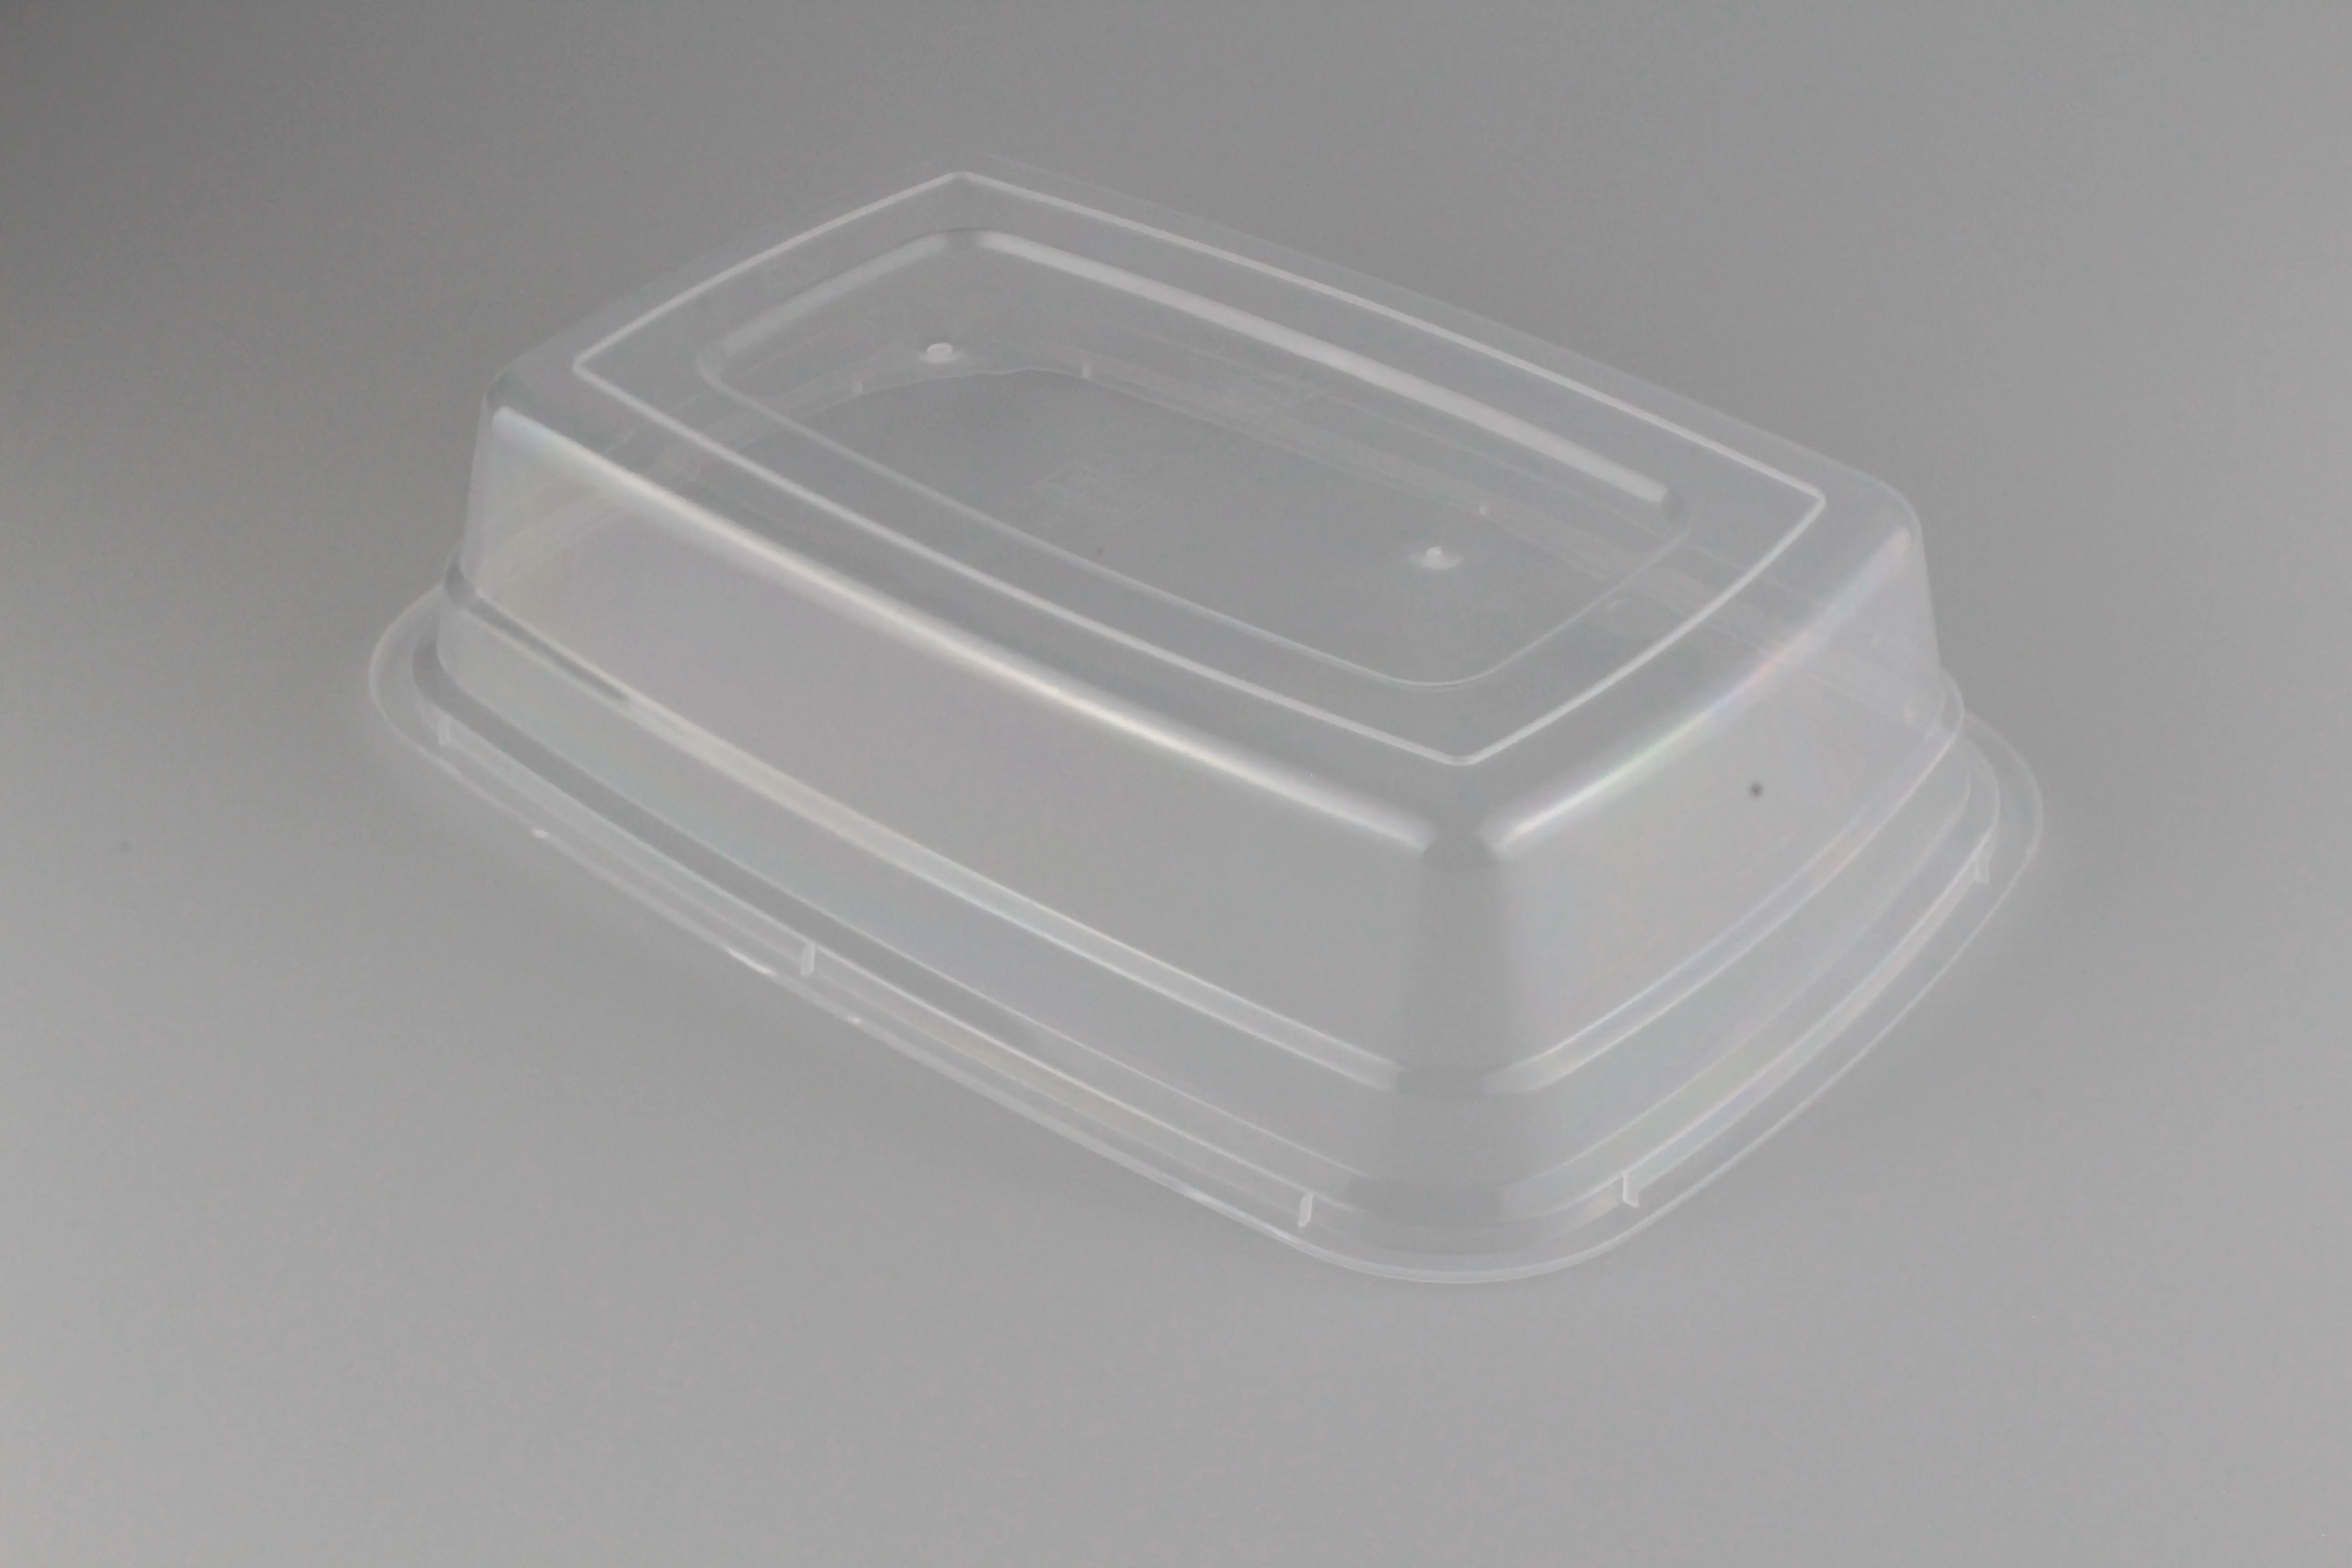 עיצוב אחרון מחיר סביר פלסטיק מזון אריזה לכופף 950 מ "ל חד-אמריקאי חד פעמי